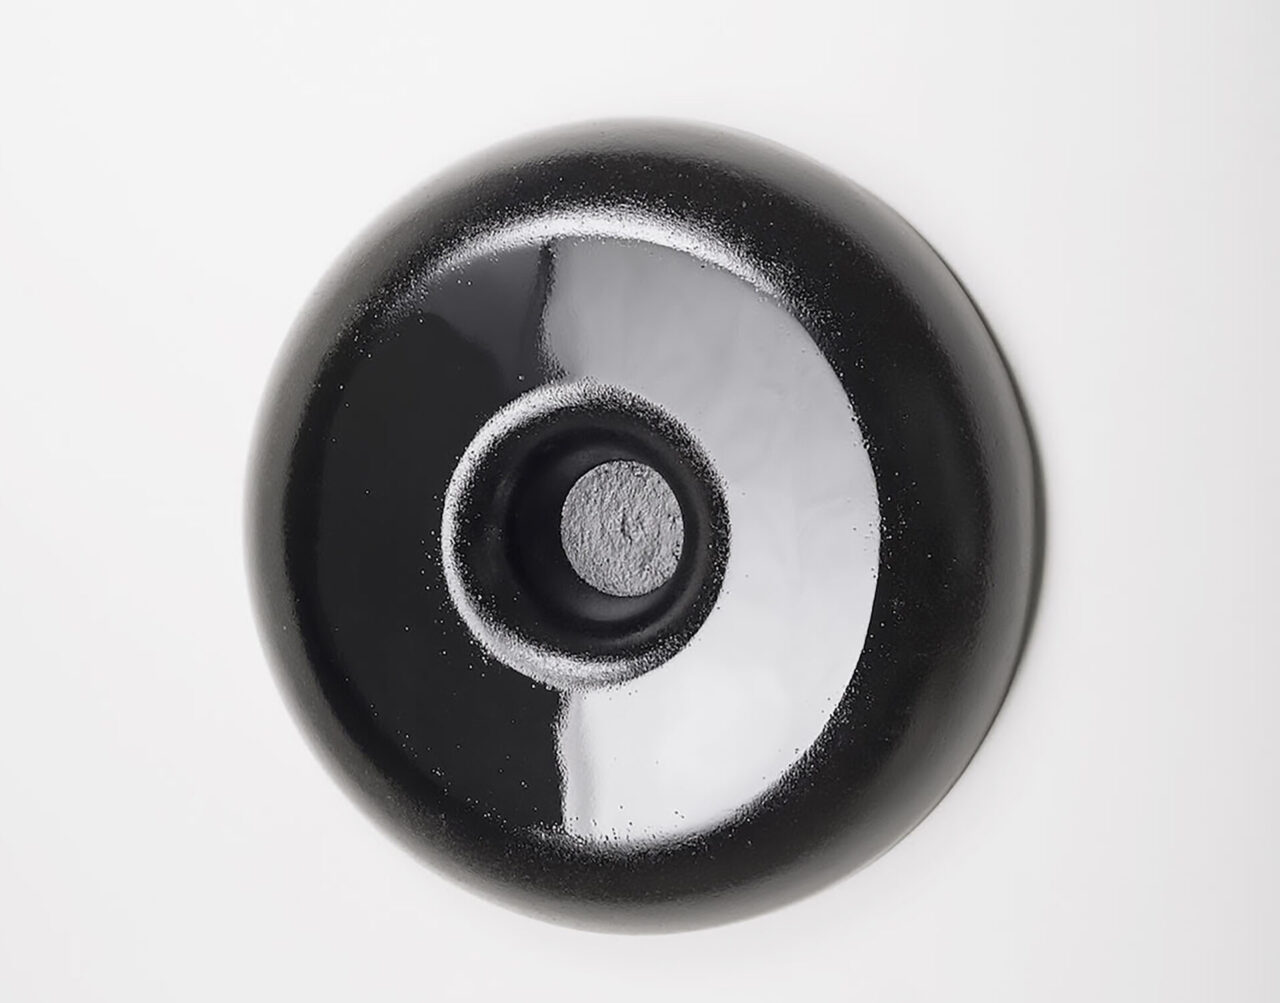 miroir noir décoratif et fonctionnel en aluminium peint mat et brillant, suspendu au mur. Edition Mobilab galerie, Design et fabrication Bertille Laguet (suisse et france)